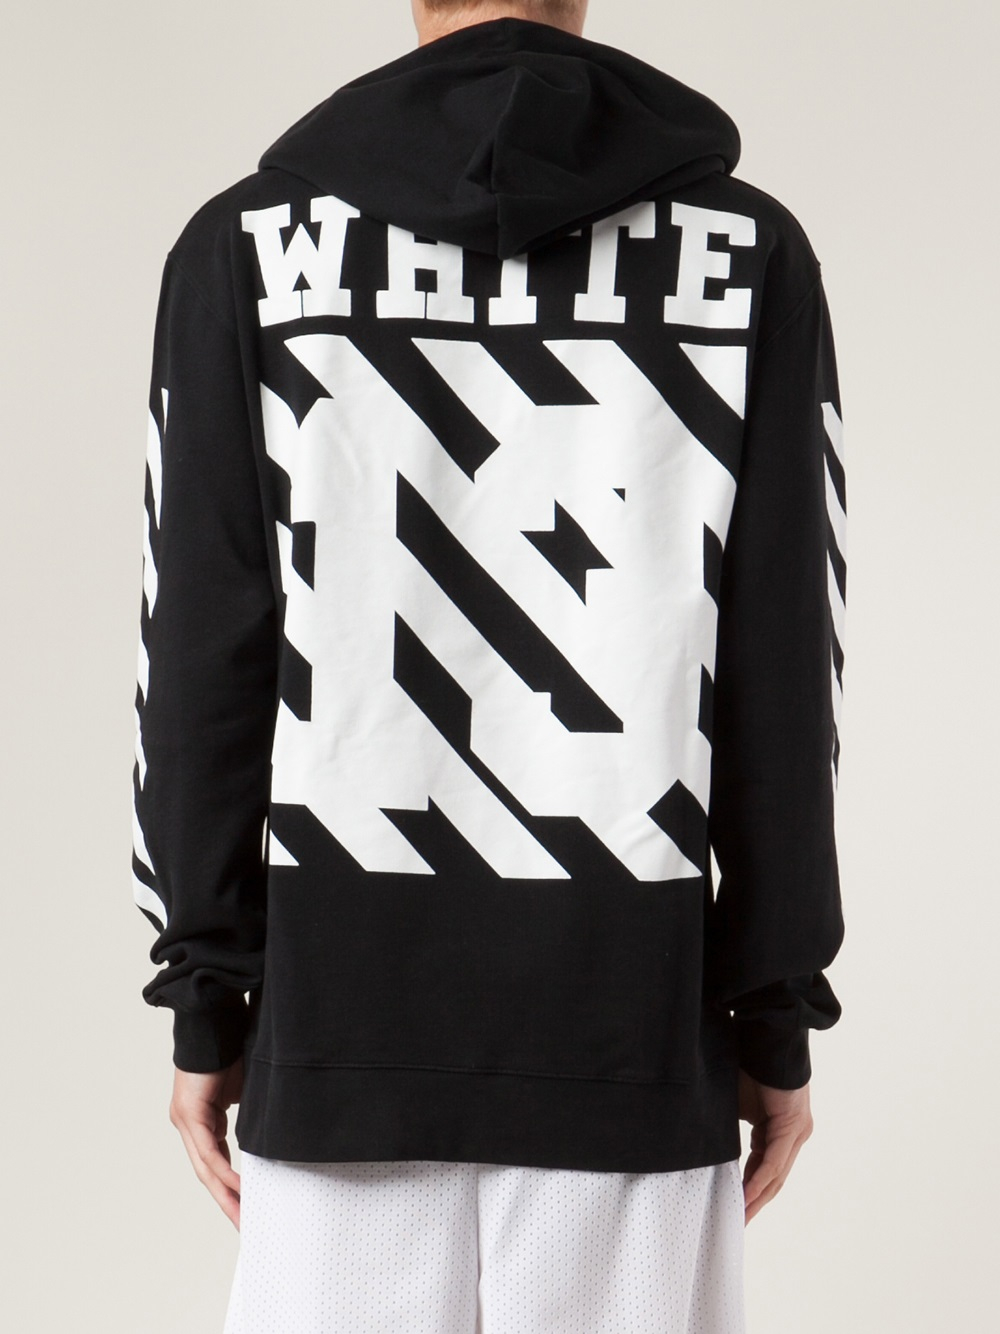 Lyst - Off-White C/O Virgil Abloh Hooded Sweatshirt in Black for Men